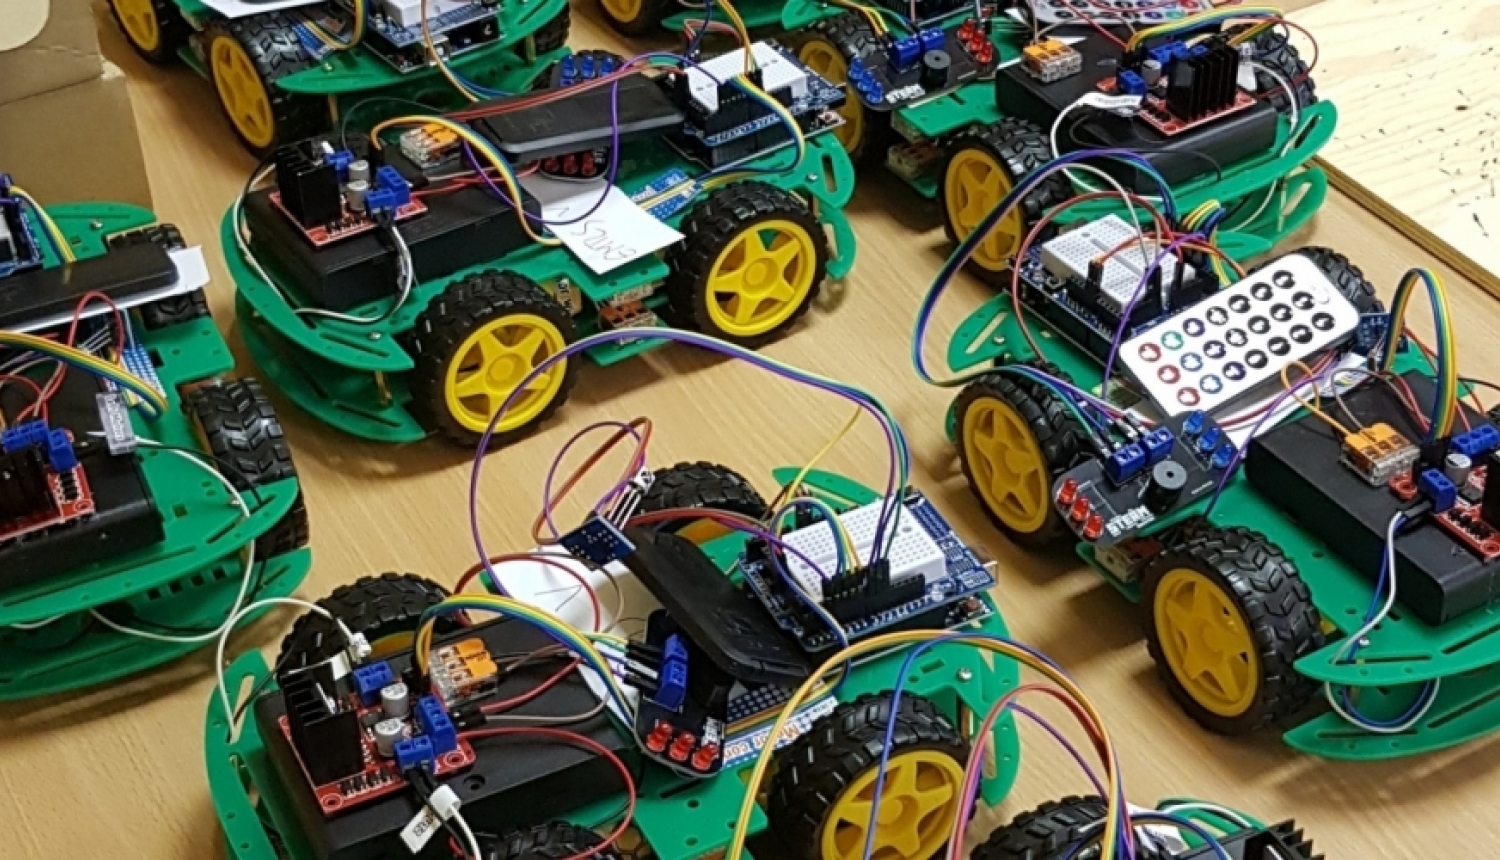 Izglītojamo individuālo kompetenču attīstības projektā Jelgavas novada skolās norisinājās pasākums “Uzbūvē savu robotu”